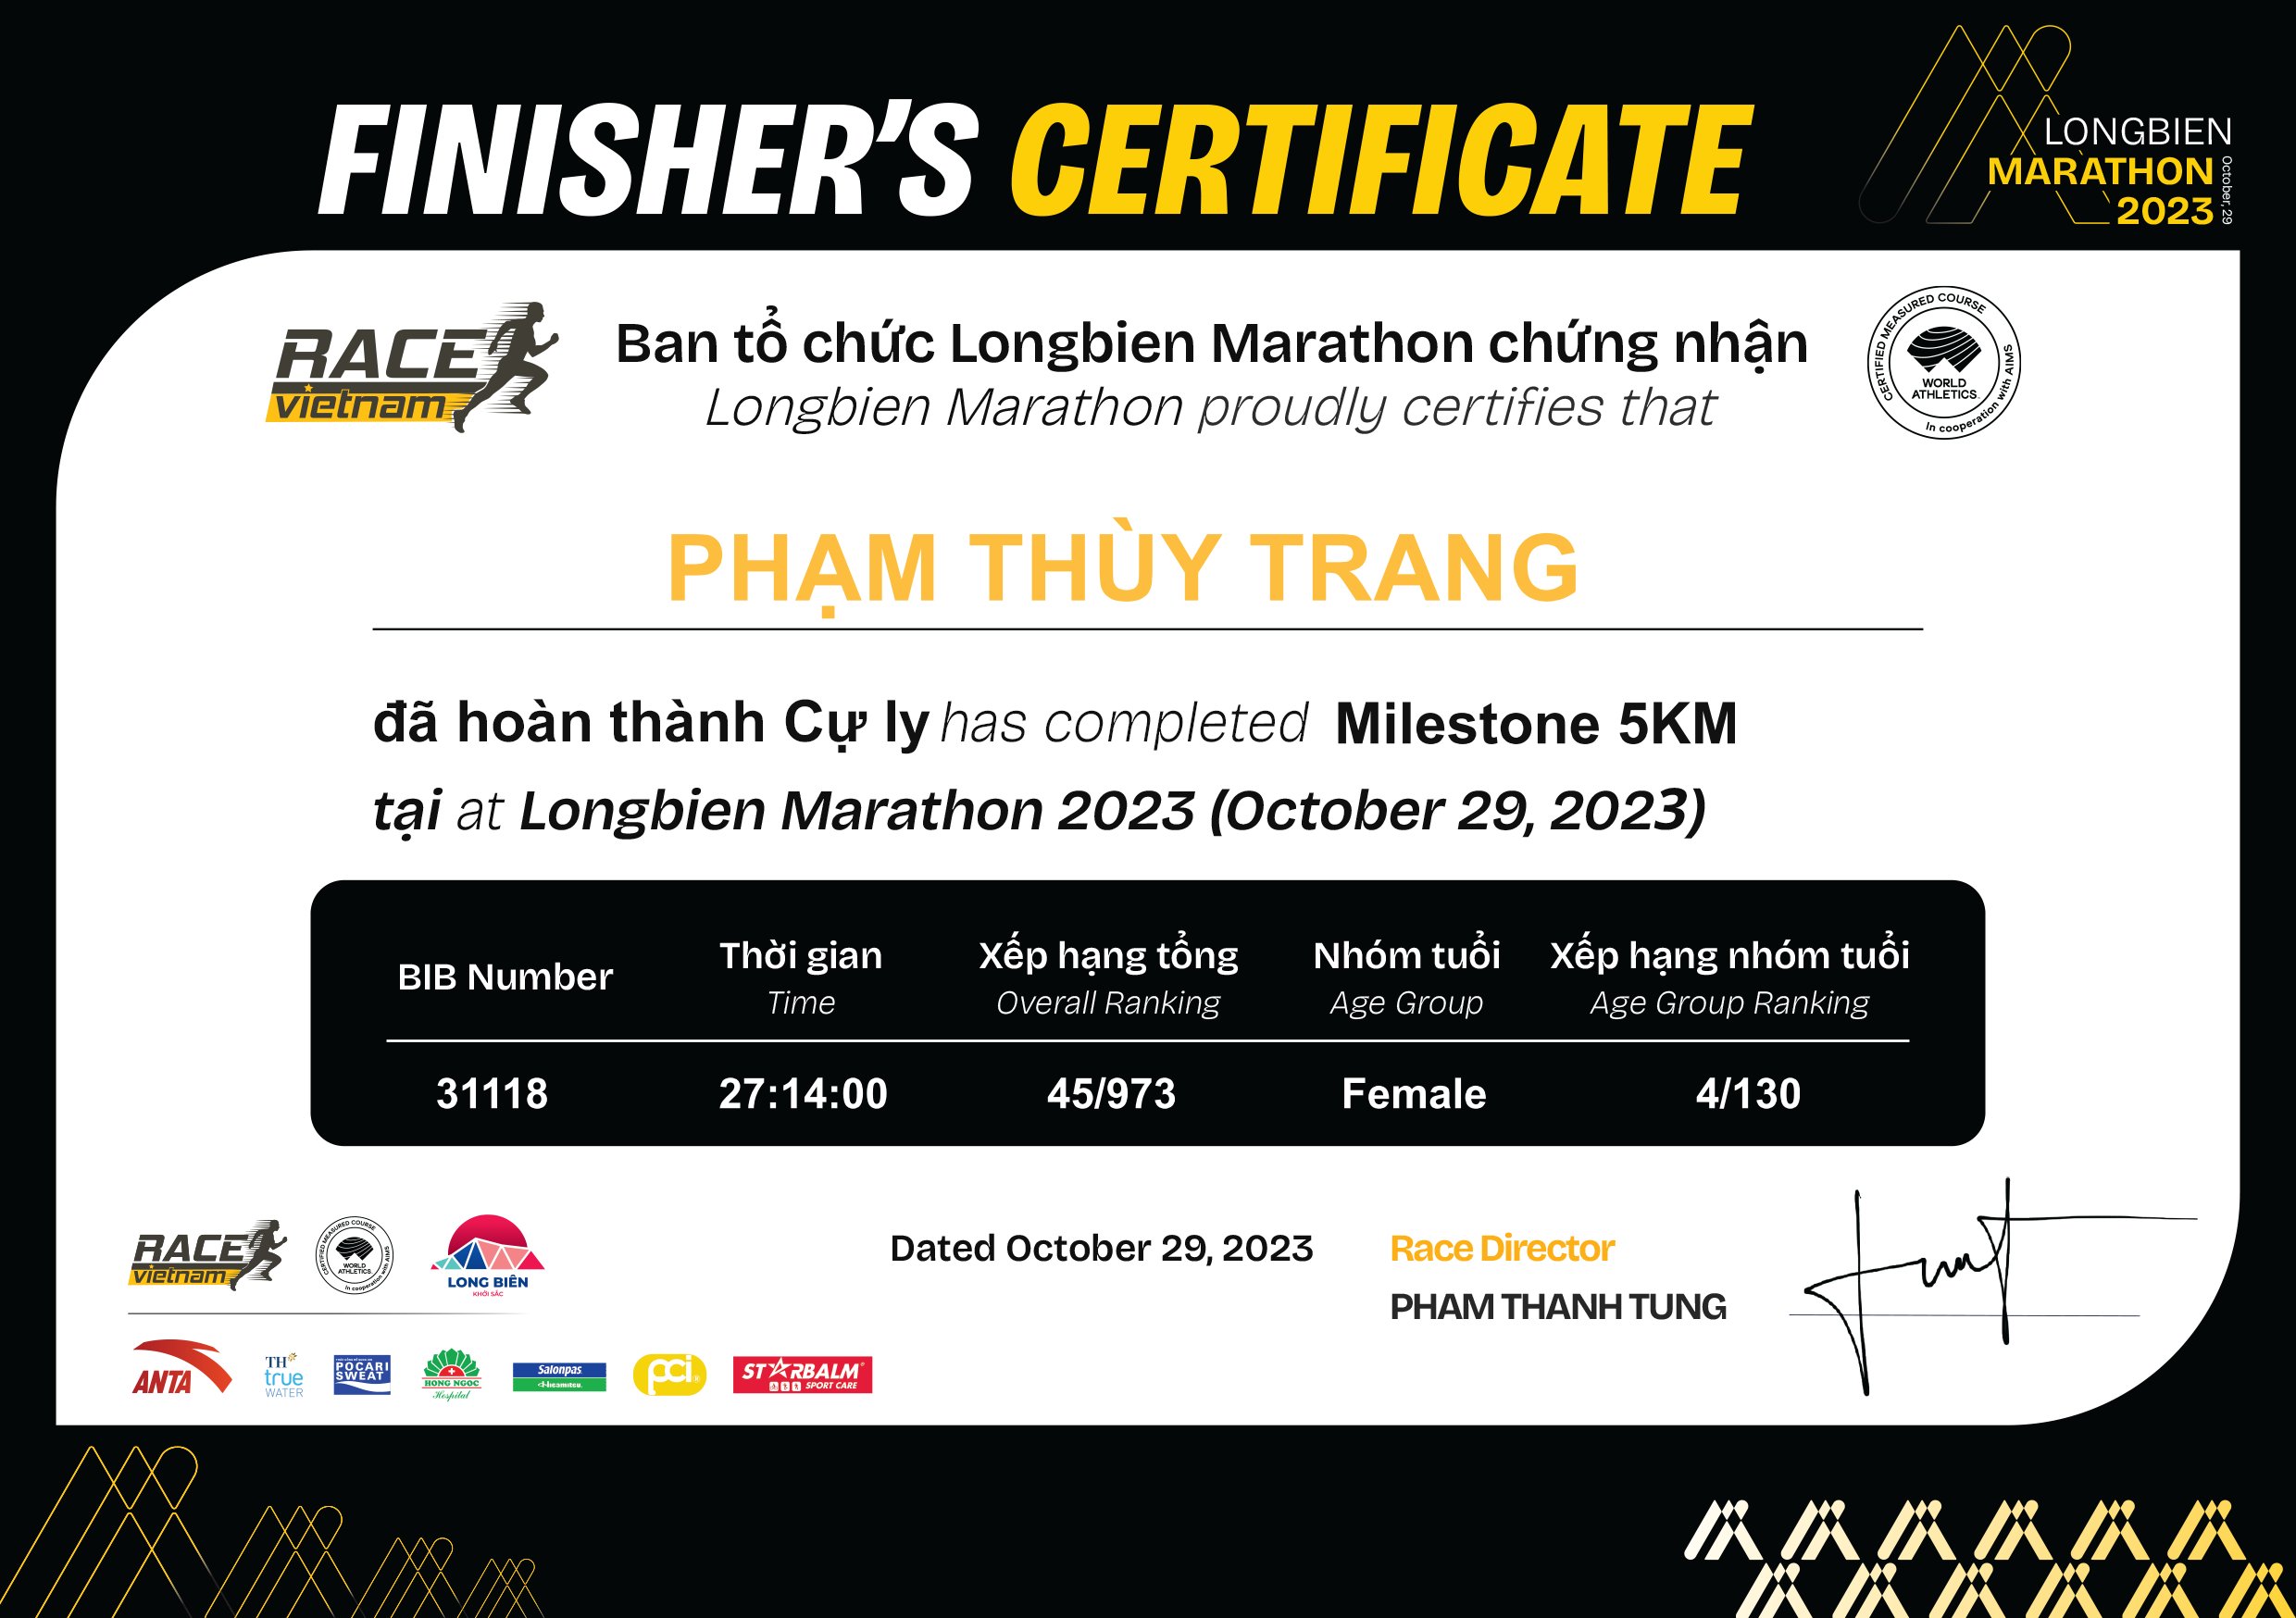 31118 - Phạm Thùy Trang